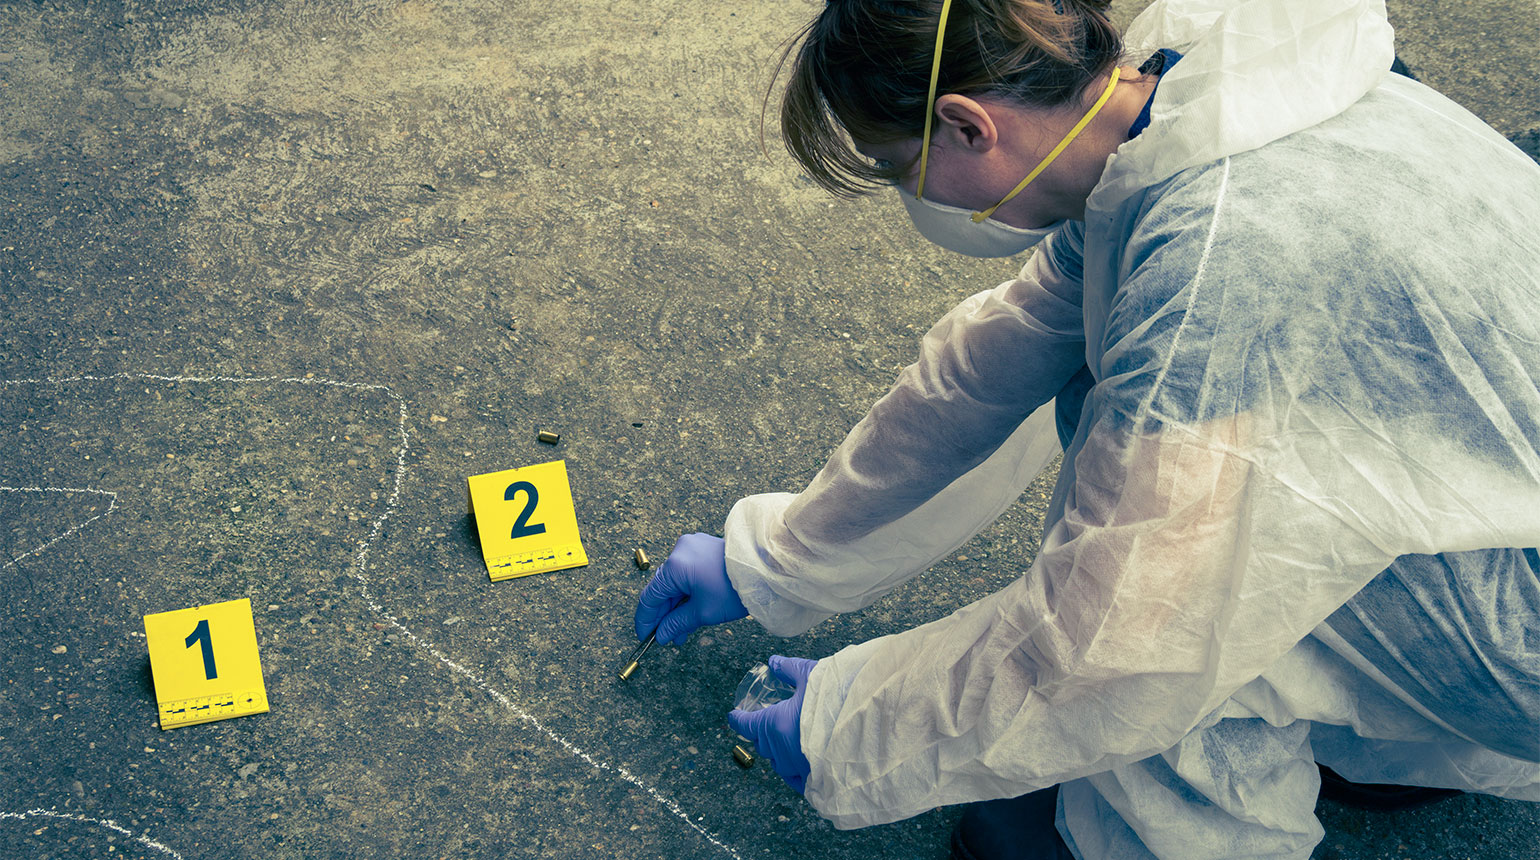 Am Tatort: Die Umrisse eines Menschen sind am Boden markiert. Eine Frau im Overall sichert Spuren.